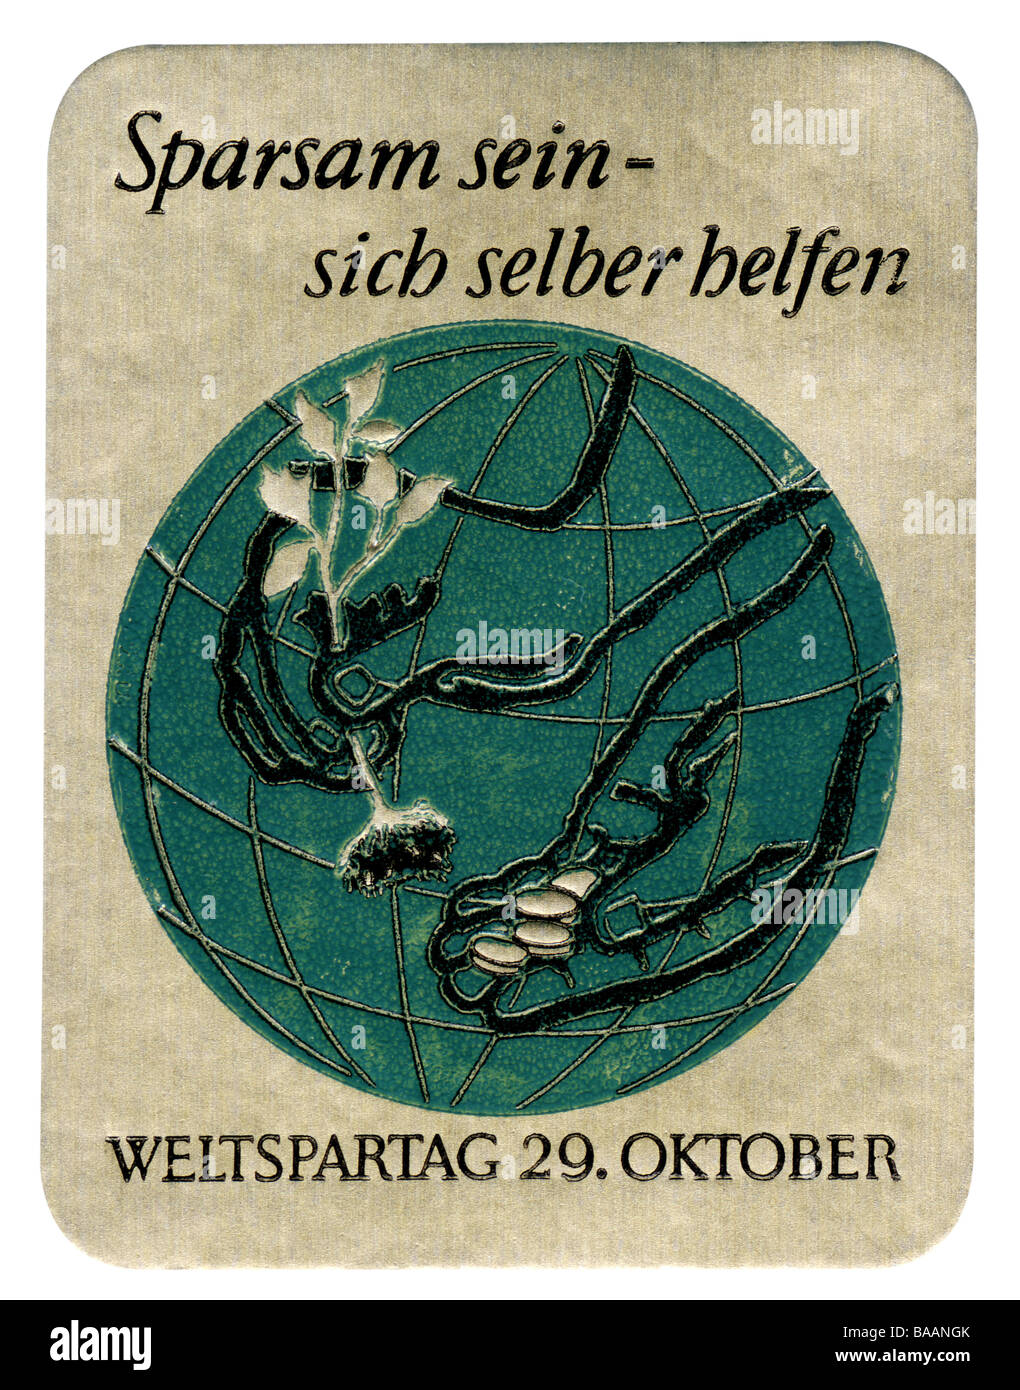 Pubblicità, timbro 'Shersam sein - sich selber helfen', World Savings Day, Germania, 29.10., 1960s, Foto Stock